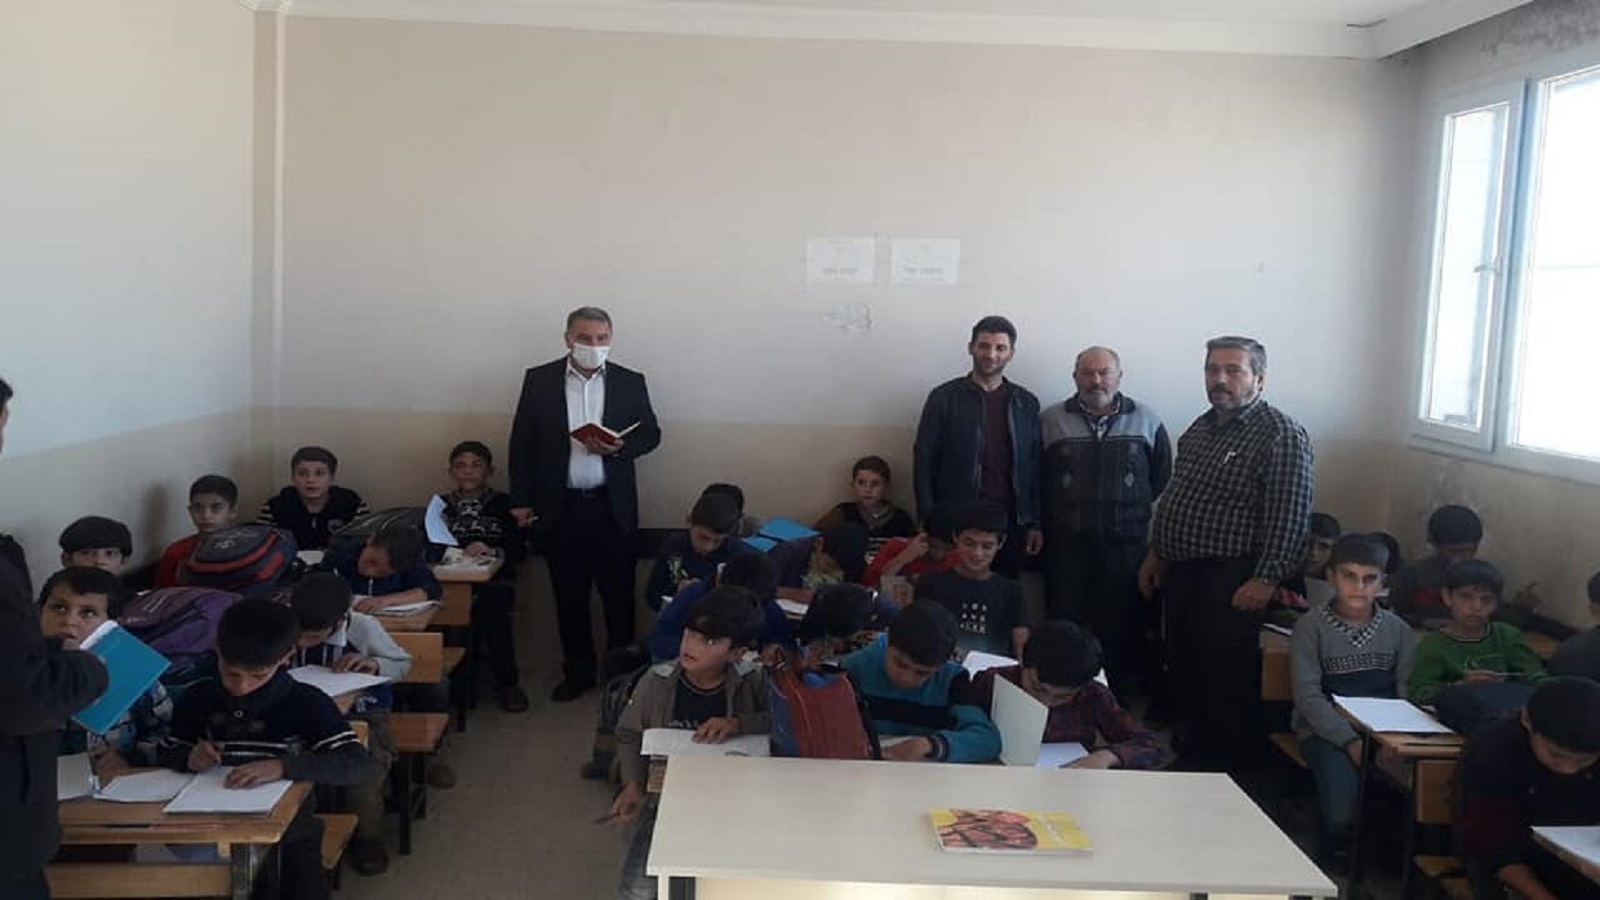 رسوم مسيئة للرسول بكتب مدرسية في حلب:ما مسؤولية تركيا؟